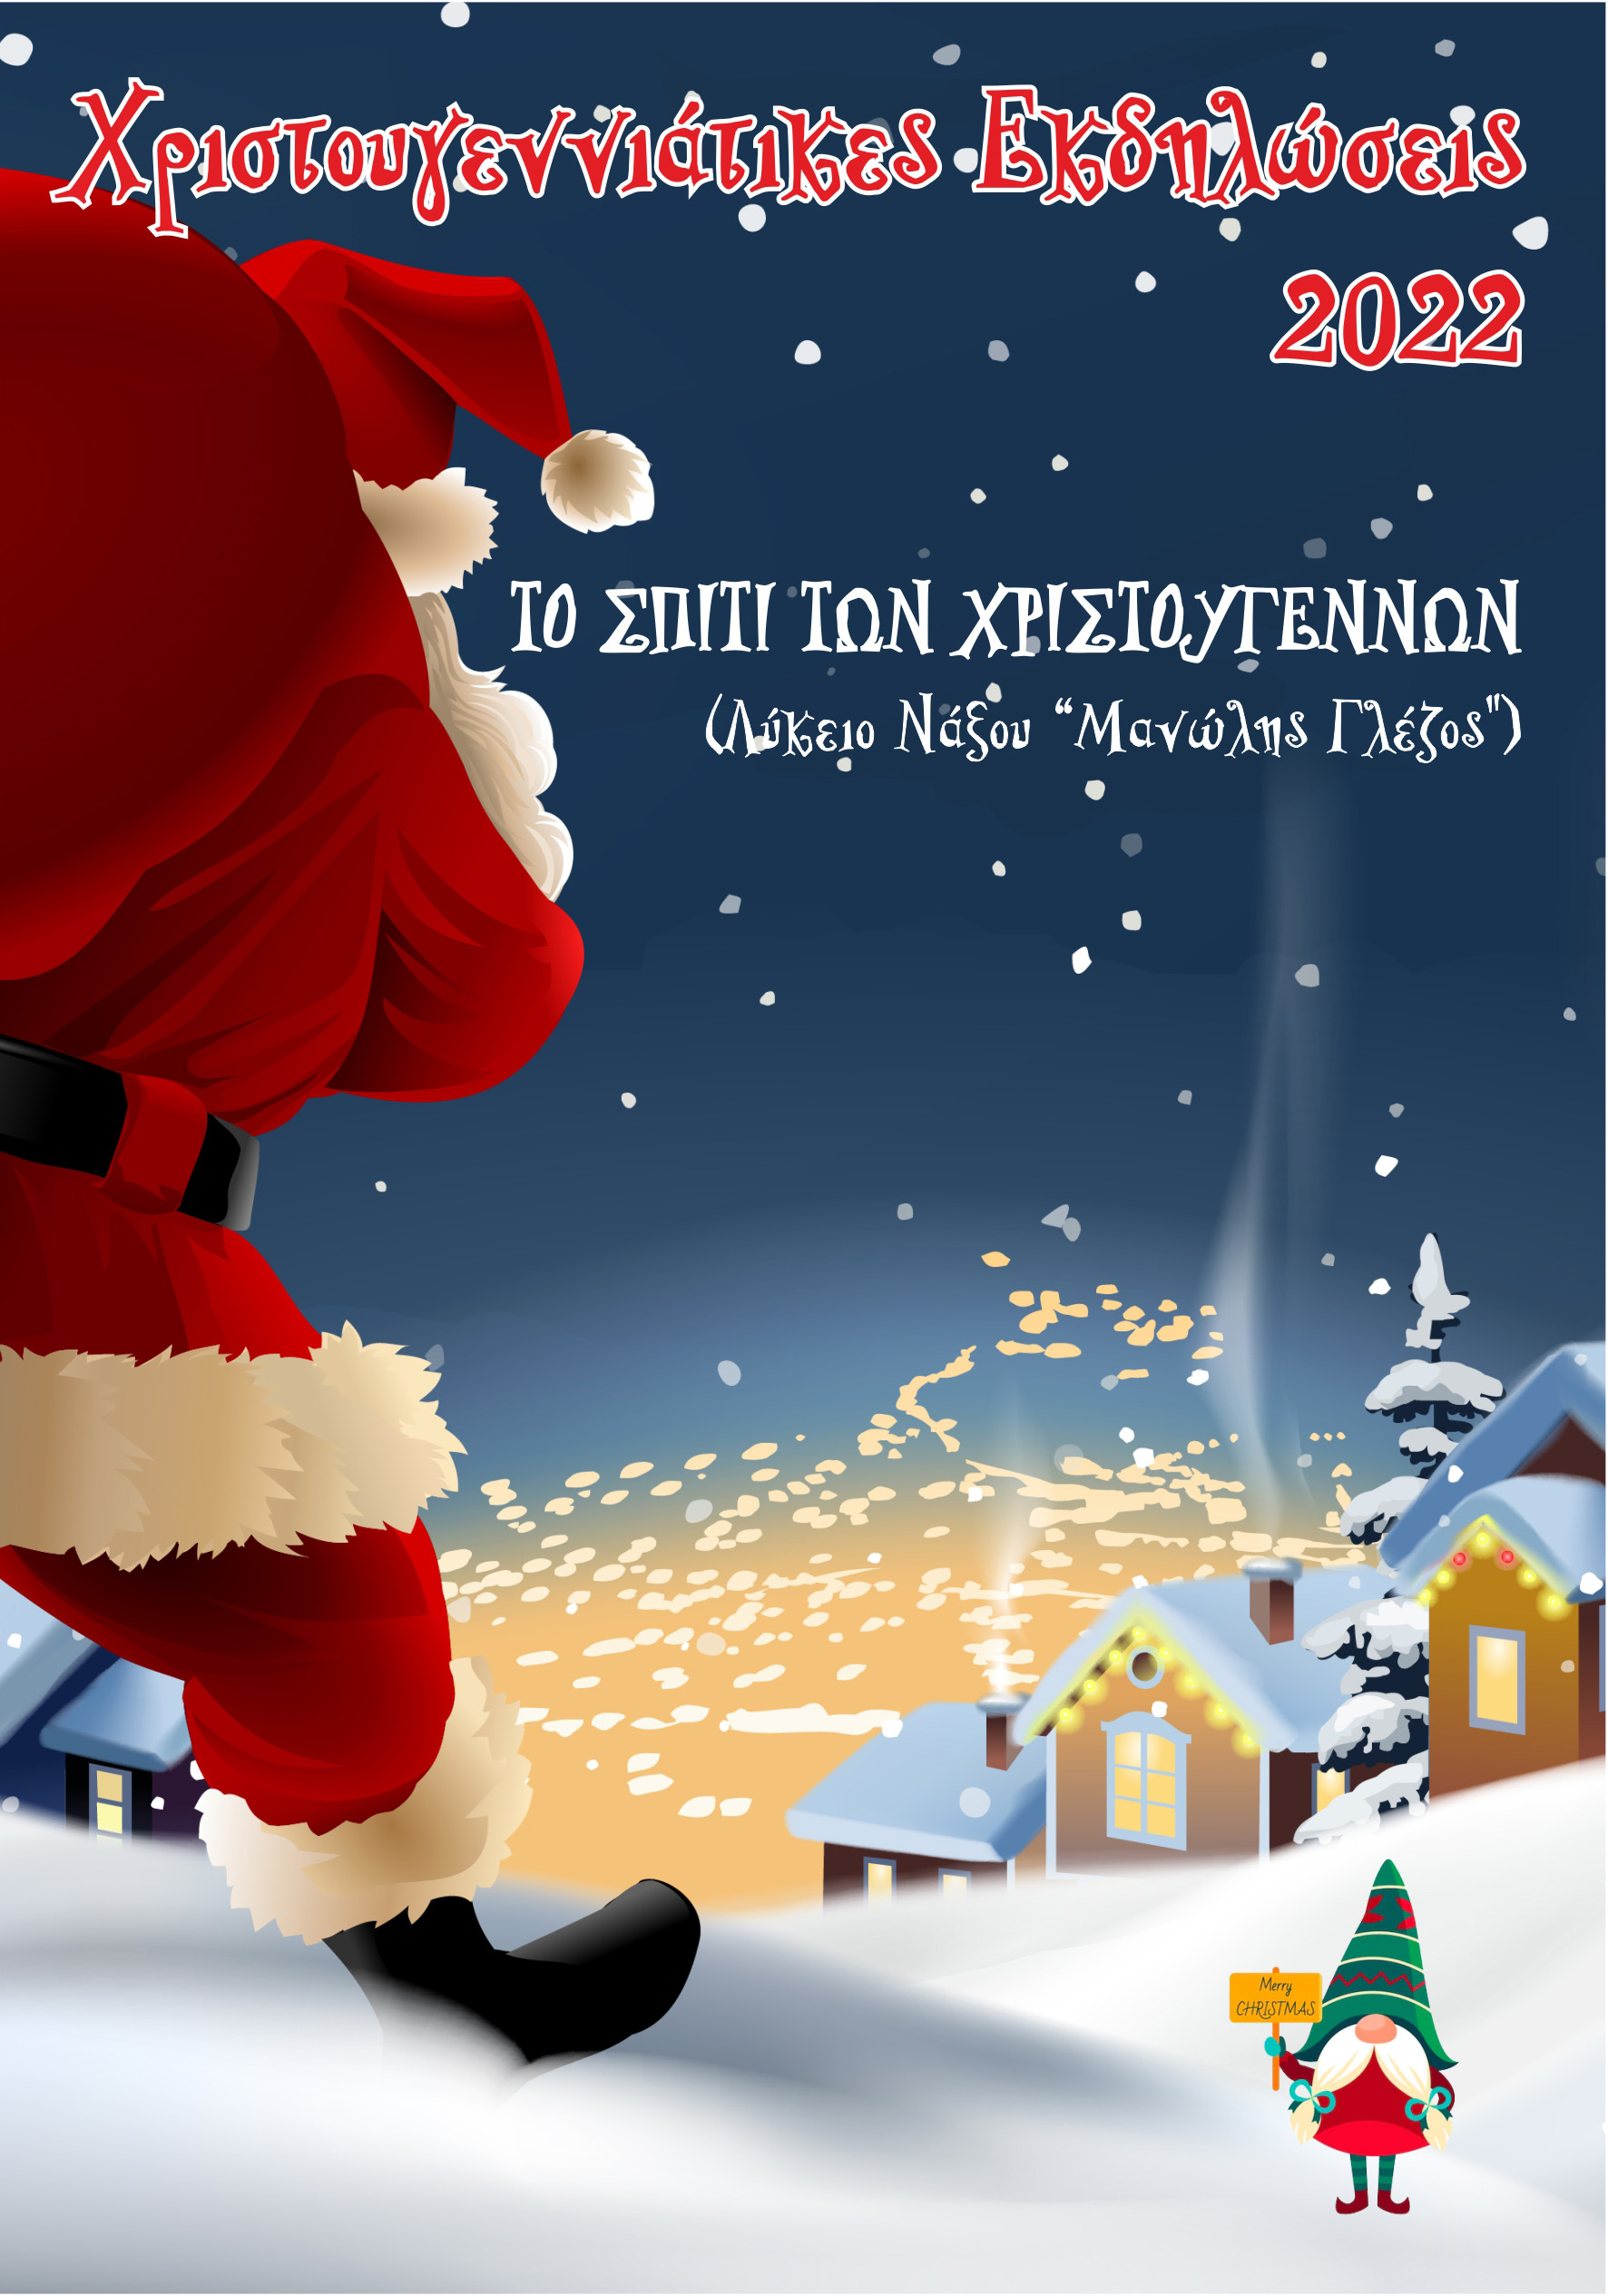 Δήμος Νάξου & Μικρών Κυκλάδων: Το καλεντάρι των χριστουγεννιάτικων εκδηλώσεων